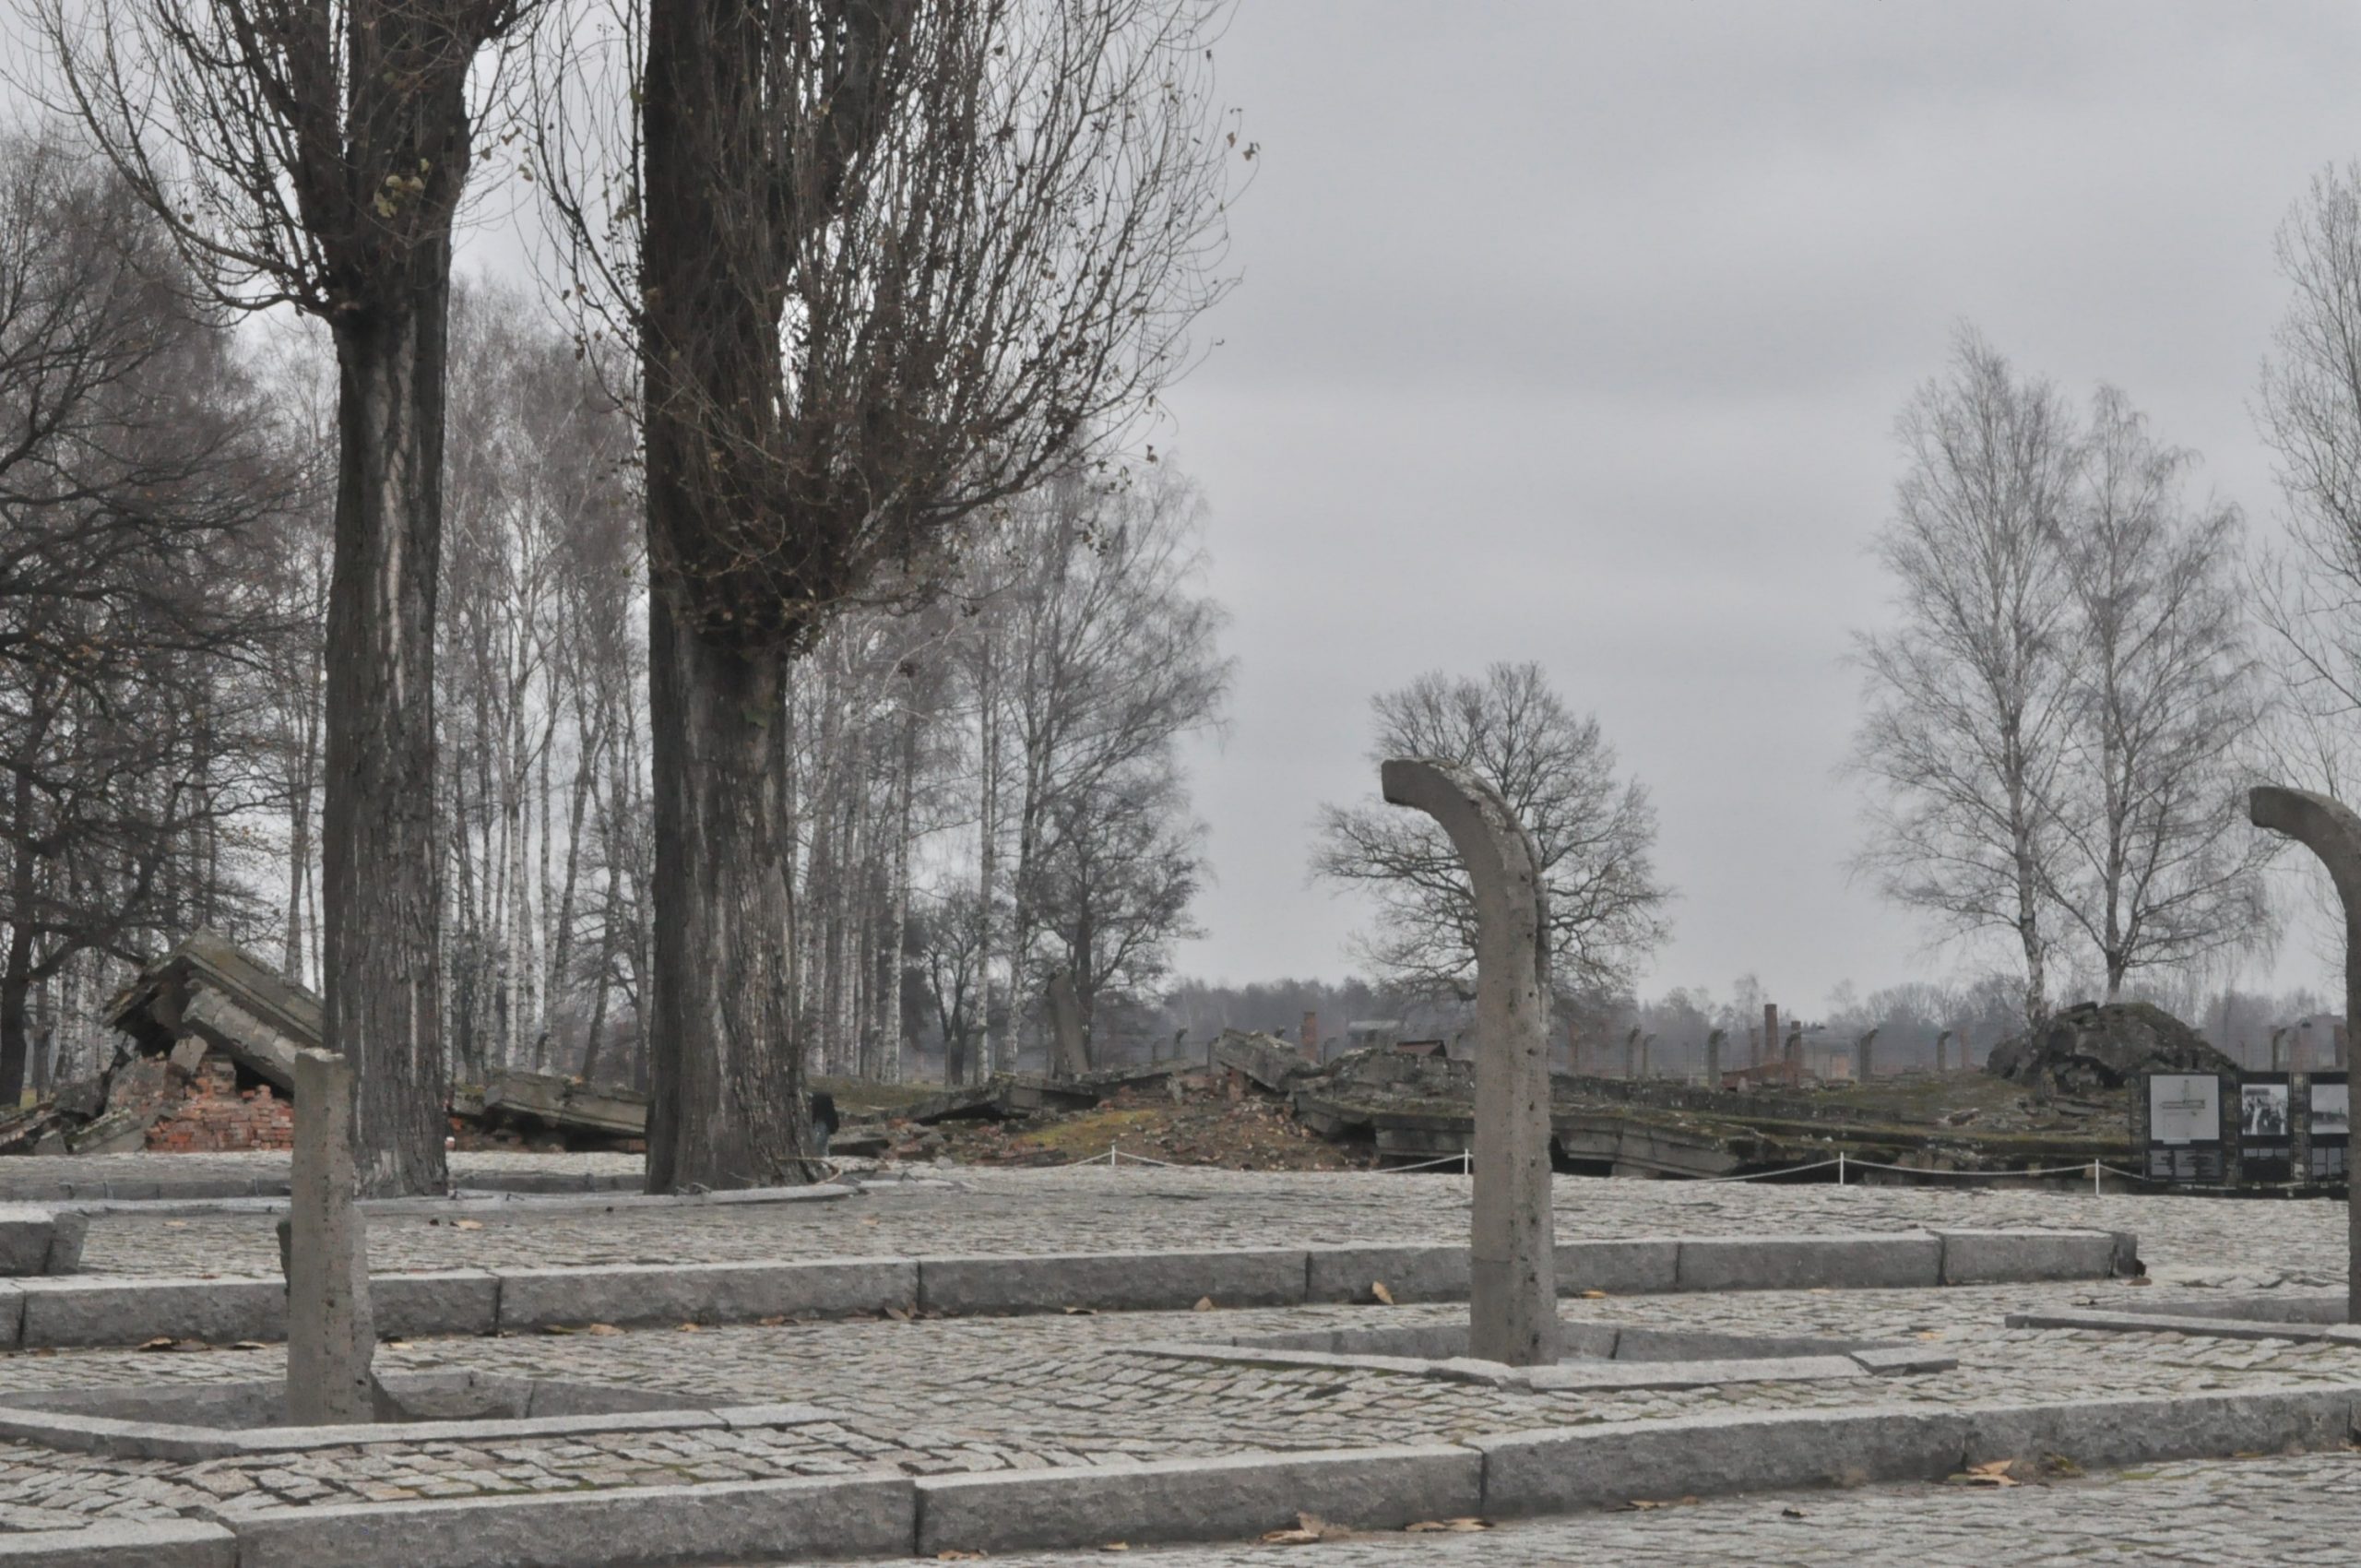 Auschwitz as a graveyard